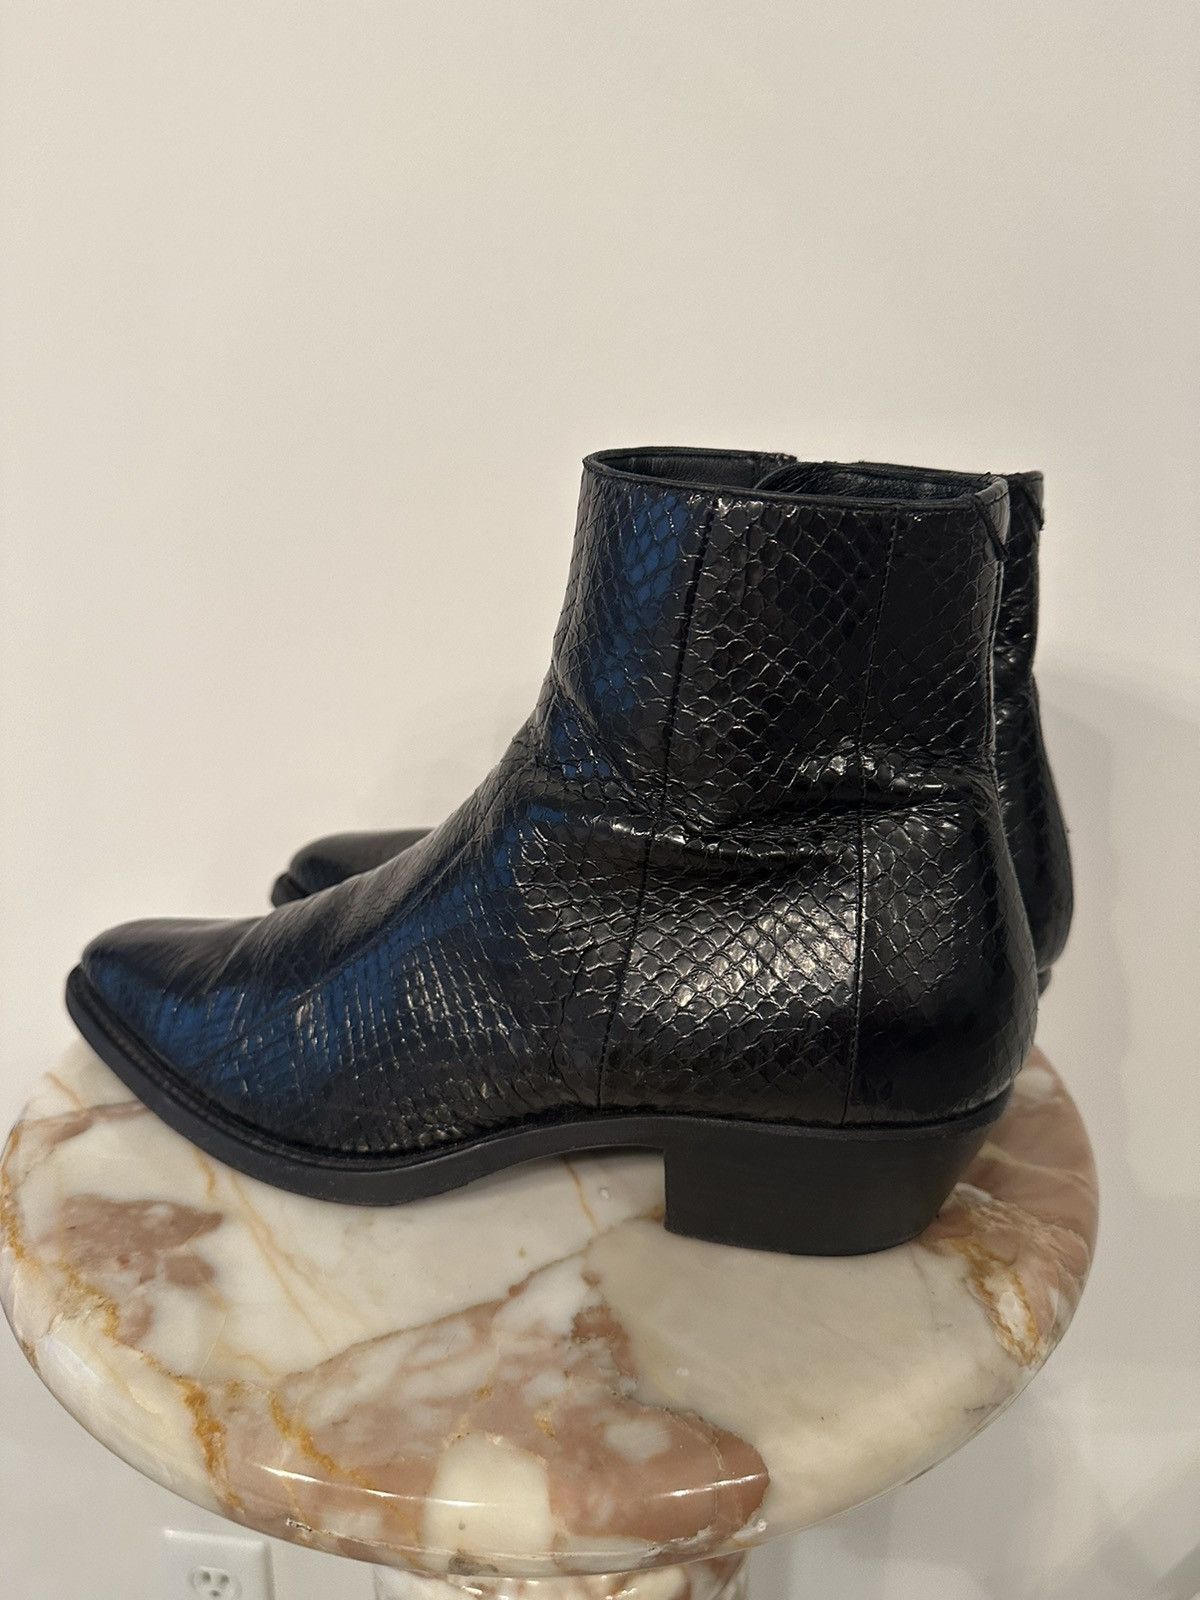 Ysl Rive Gauche By Hedi Slimane YSL Snake Skin Boots Size US 10 / EU 43 - 4 Thumbnail